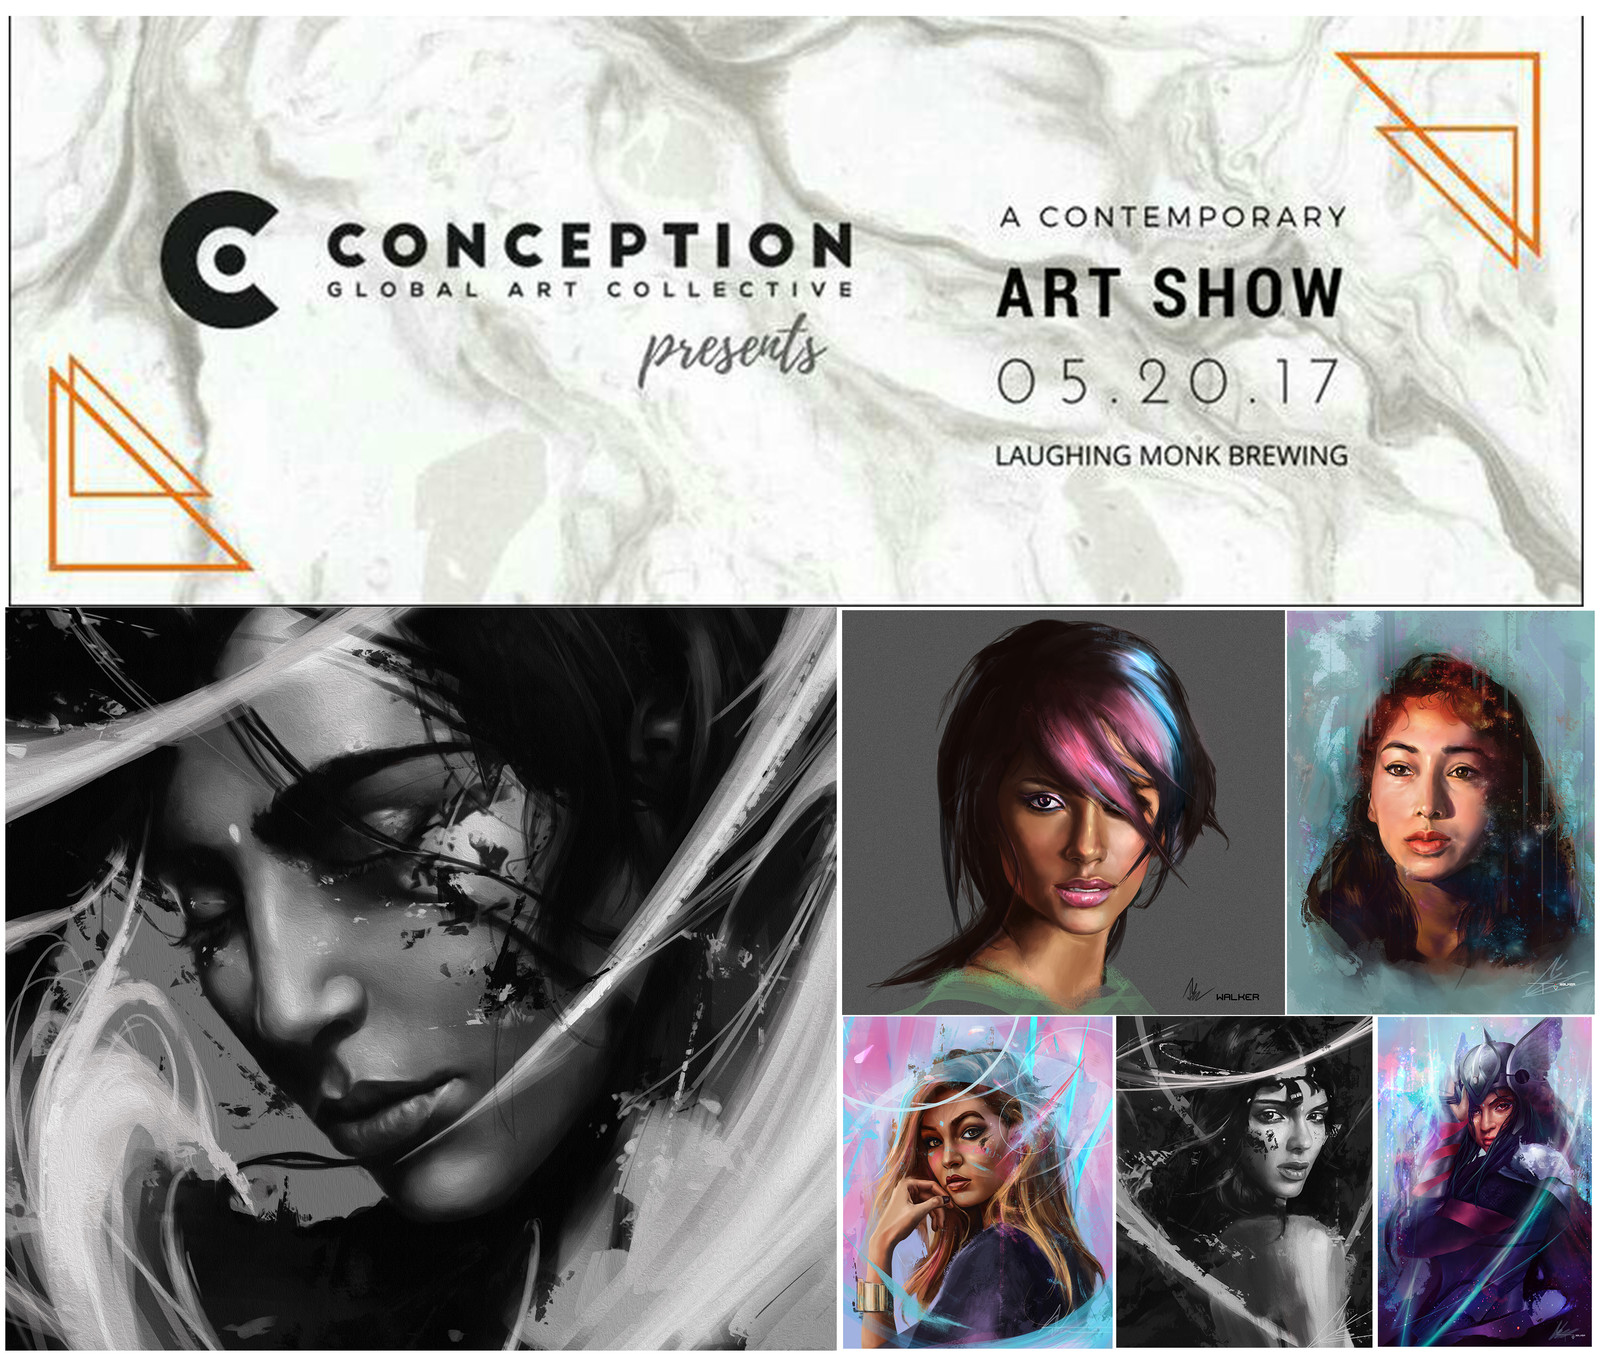 Conception Arts Gallery